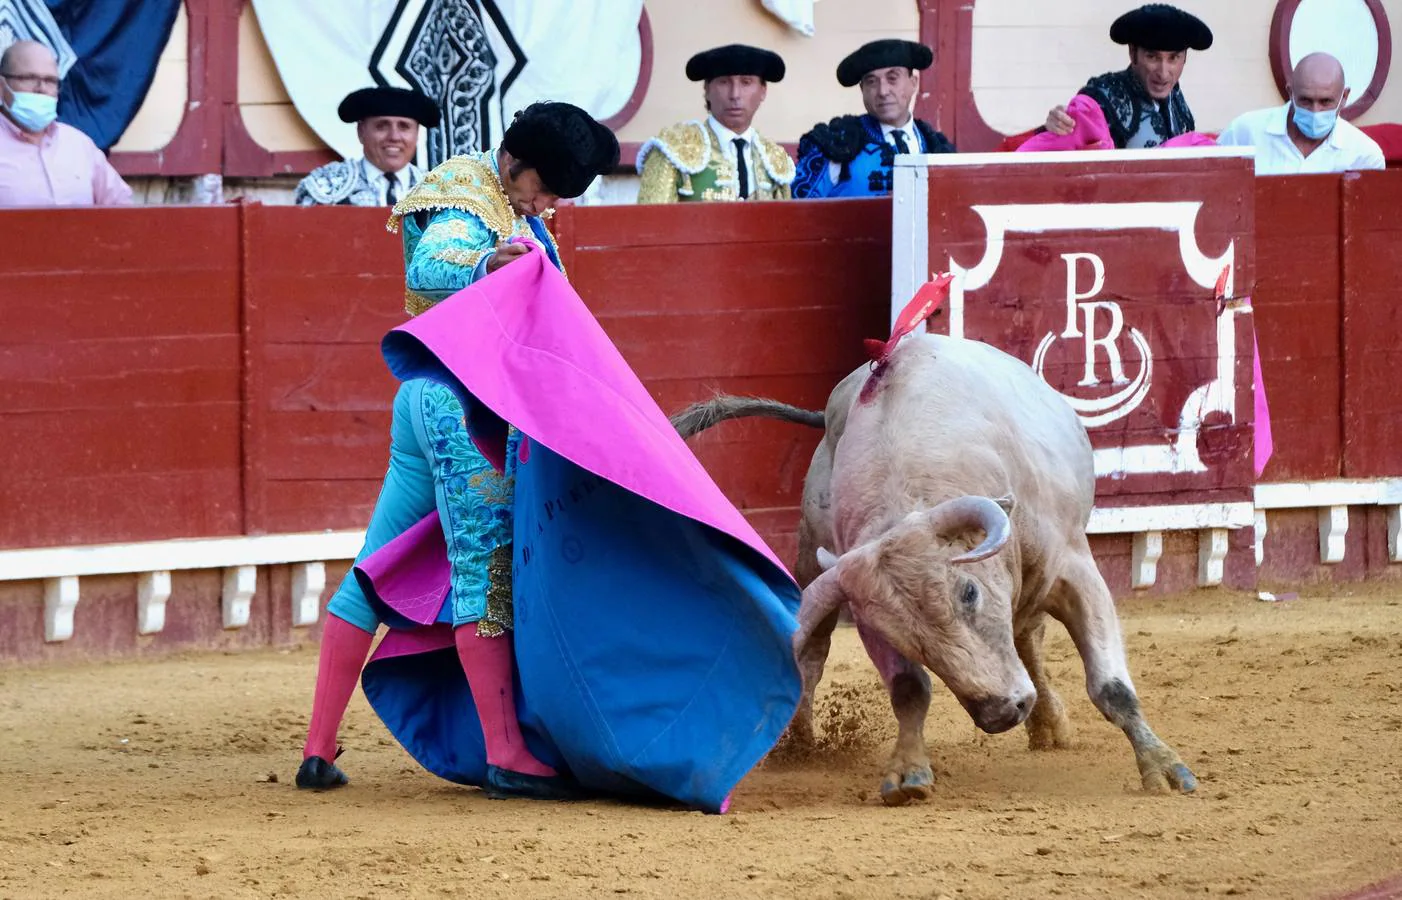 FOTOS: Morante, con seis toros de Prieto de la Cal en El Puerto